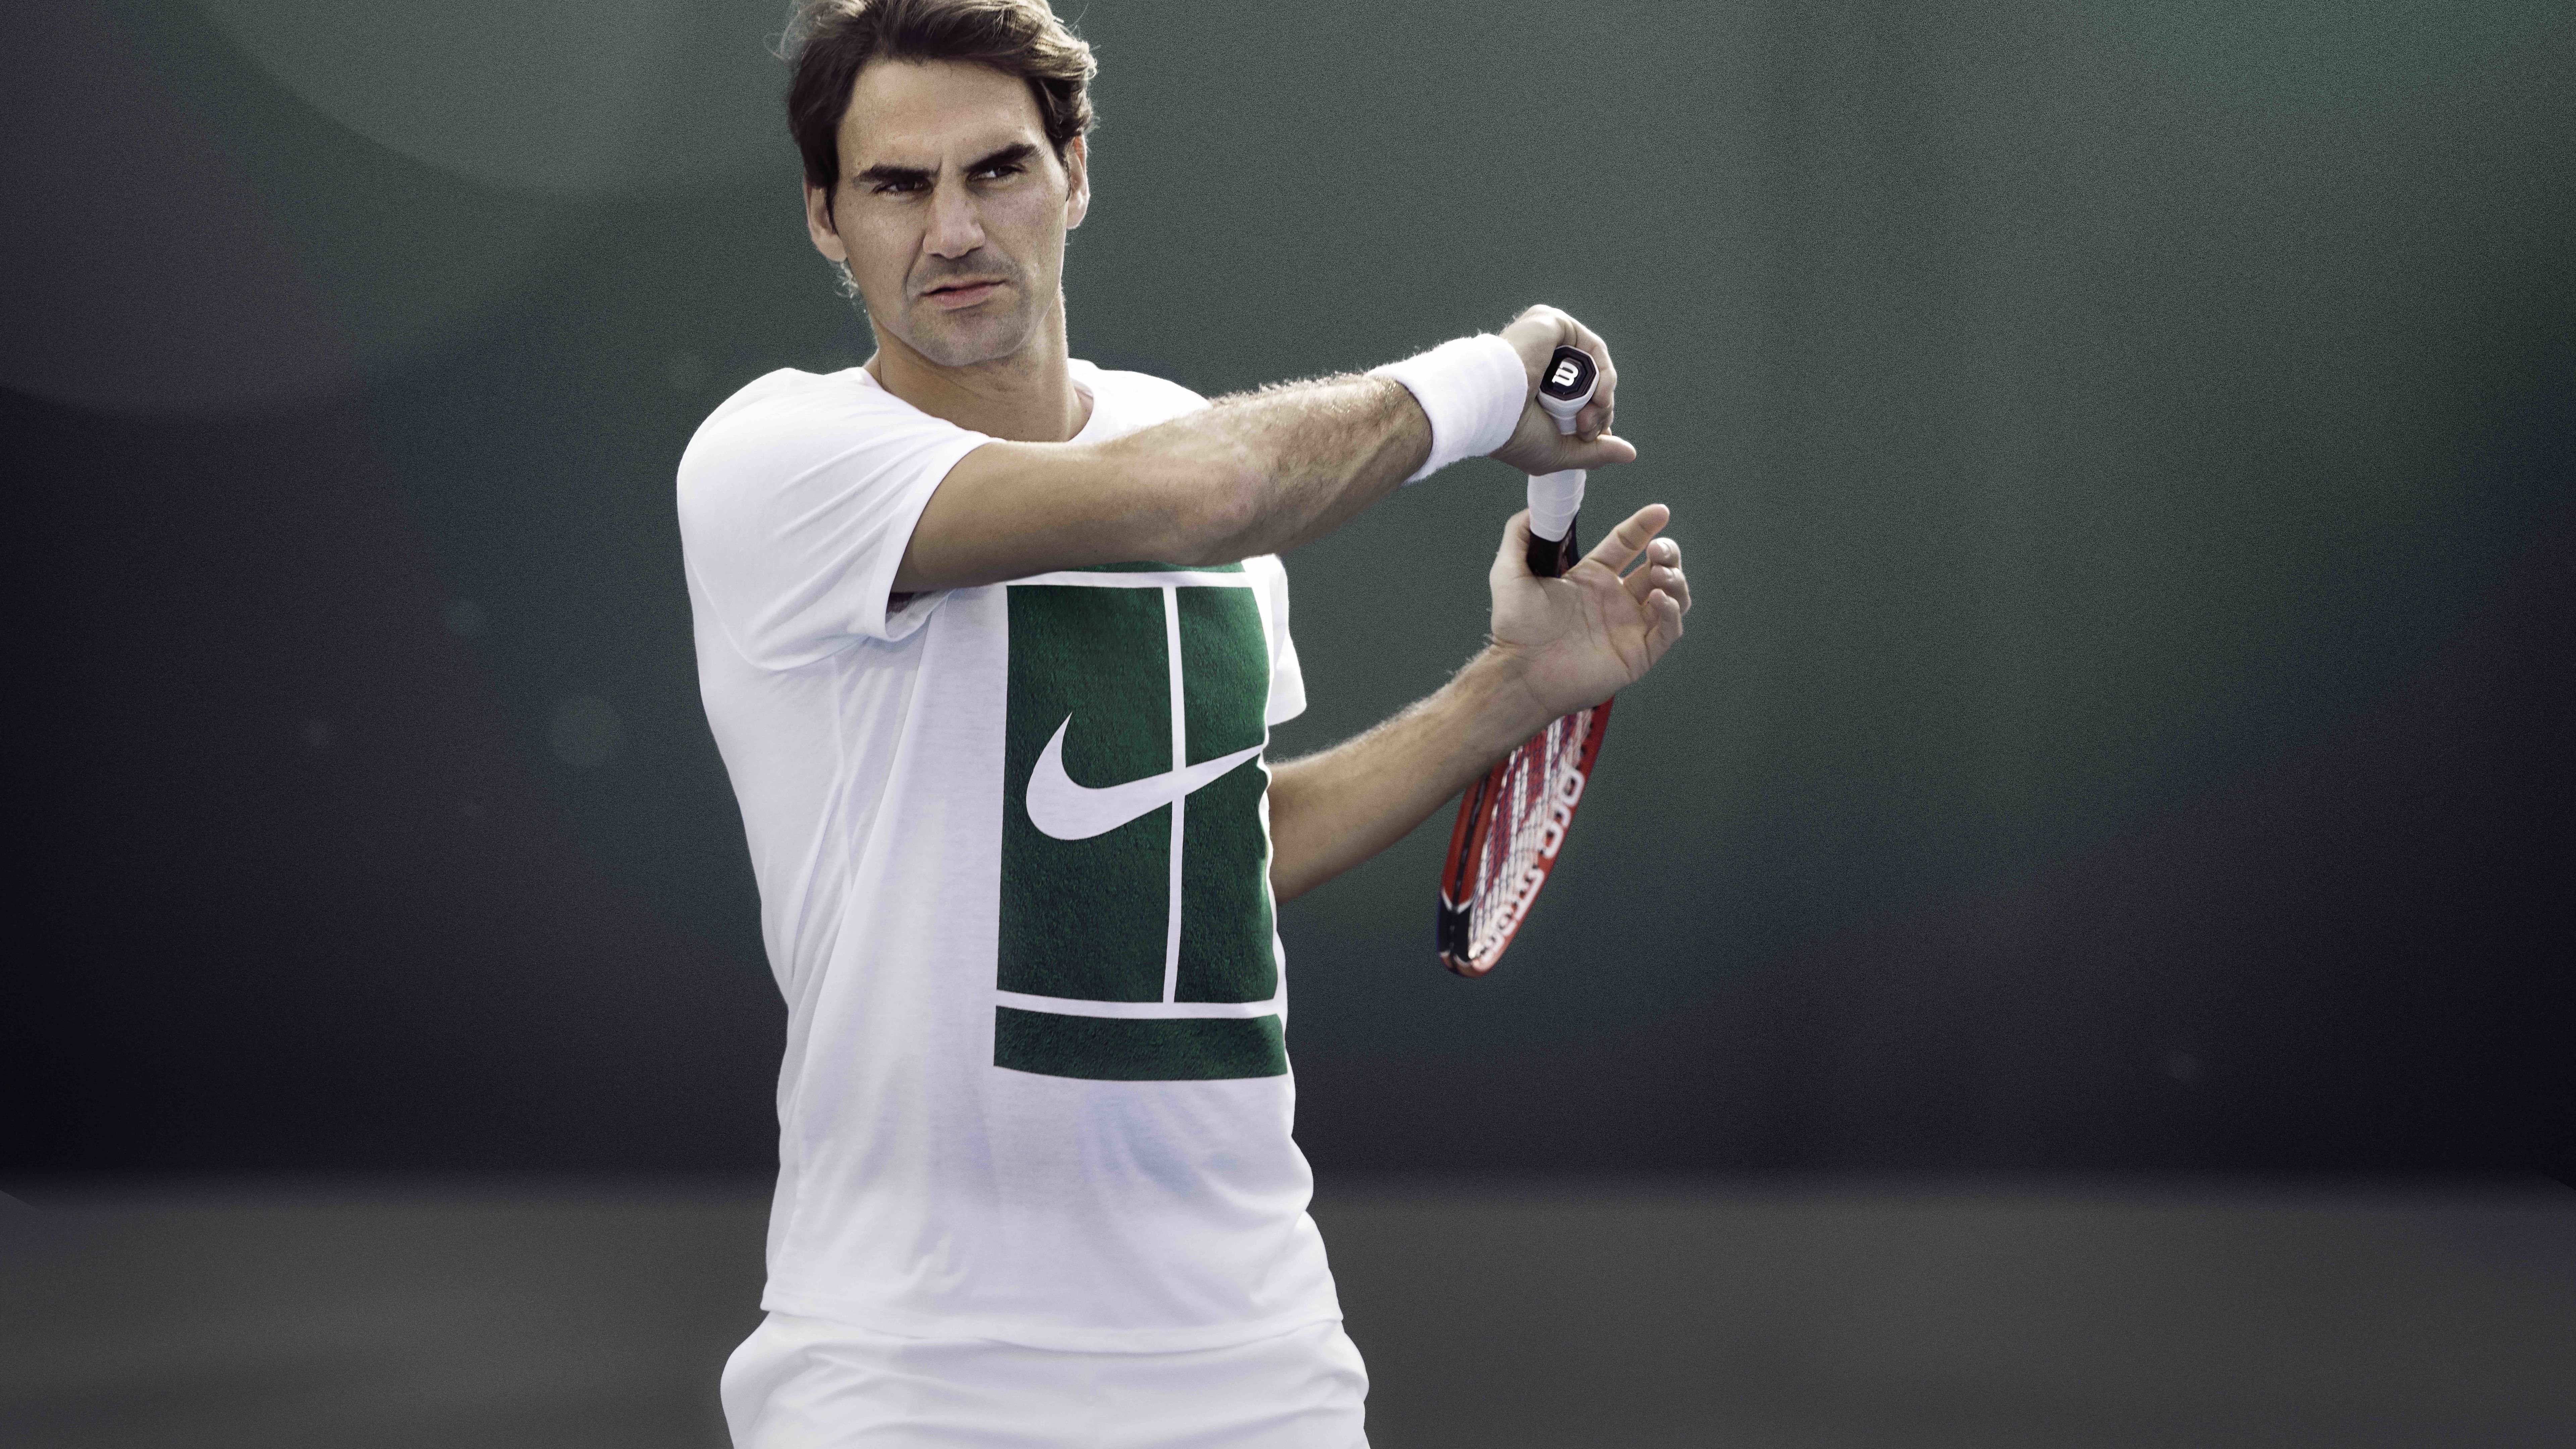 دانلود عکس با کیفیت بالا برای چاپ بهترین تنیس باز جهان راجر فدرر